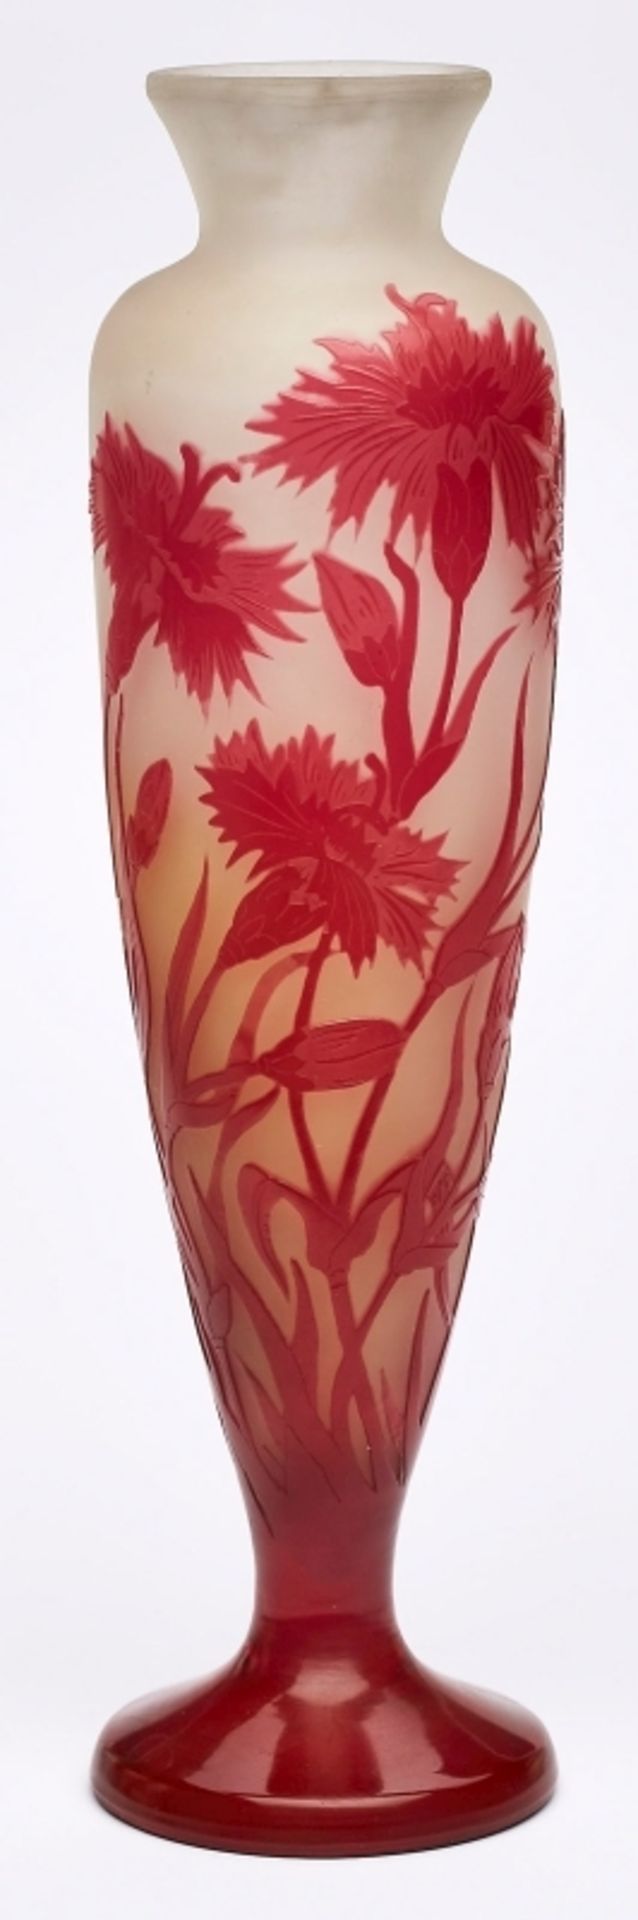 Kl. Vase "Kornblumen", Gallé um 1920. - Bild 2 aus 3